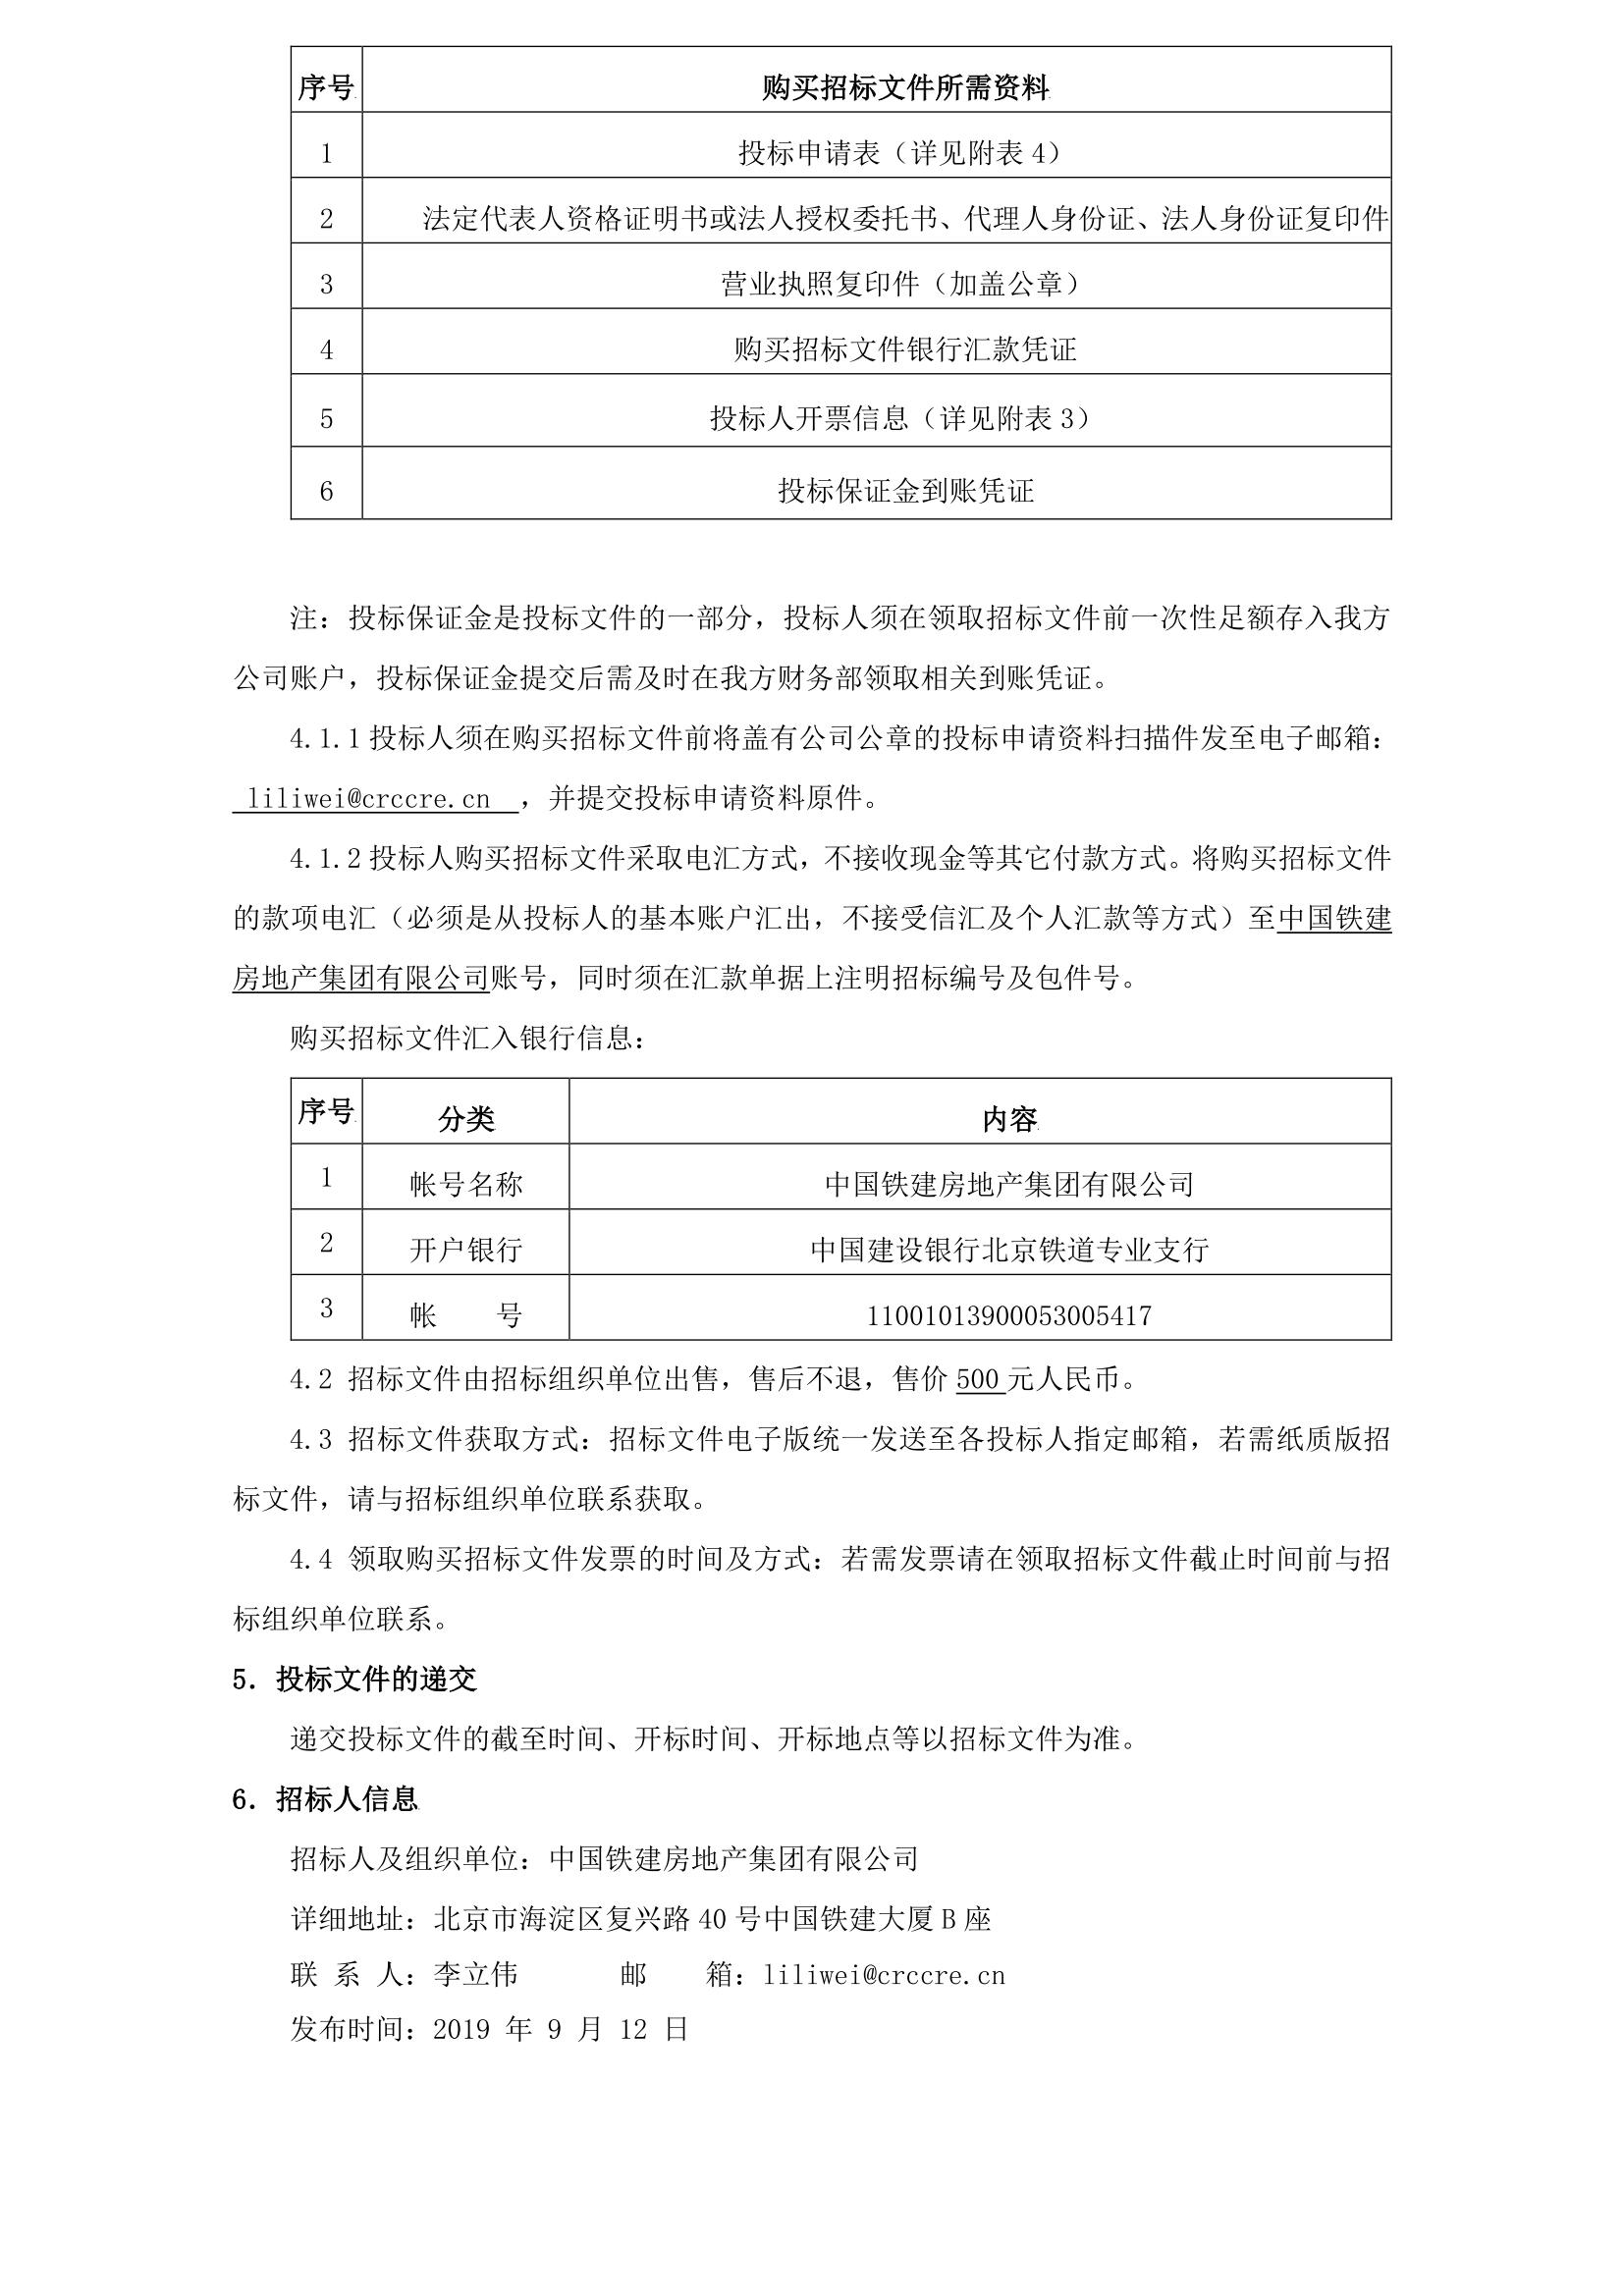 中国铁建房地产集团有限公司2019 至 2020 年木地板品类战略采购招标公告_02.jpg